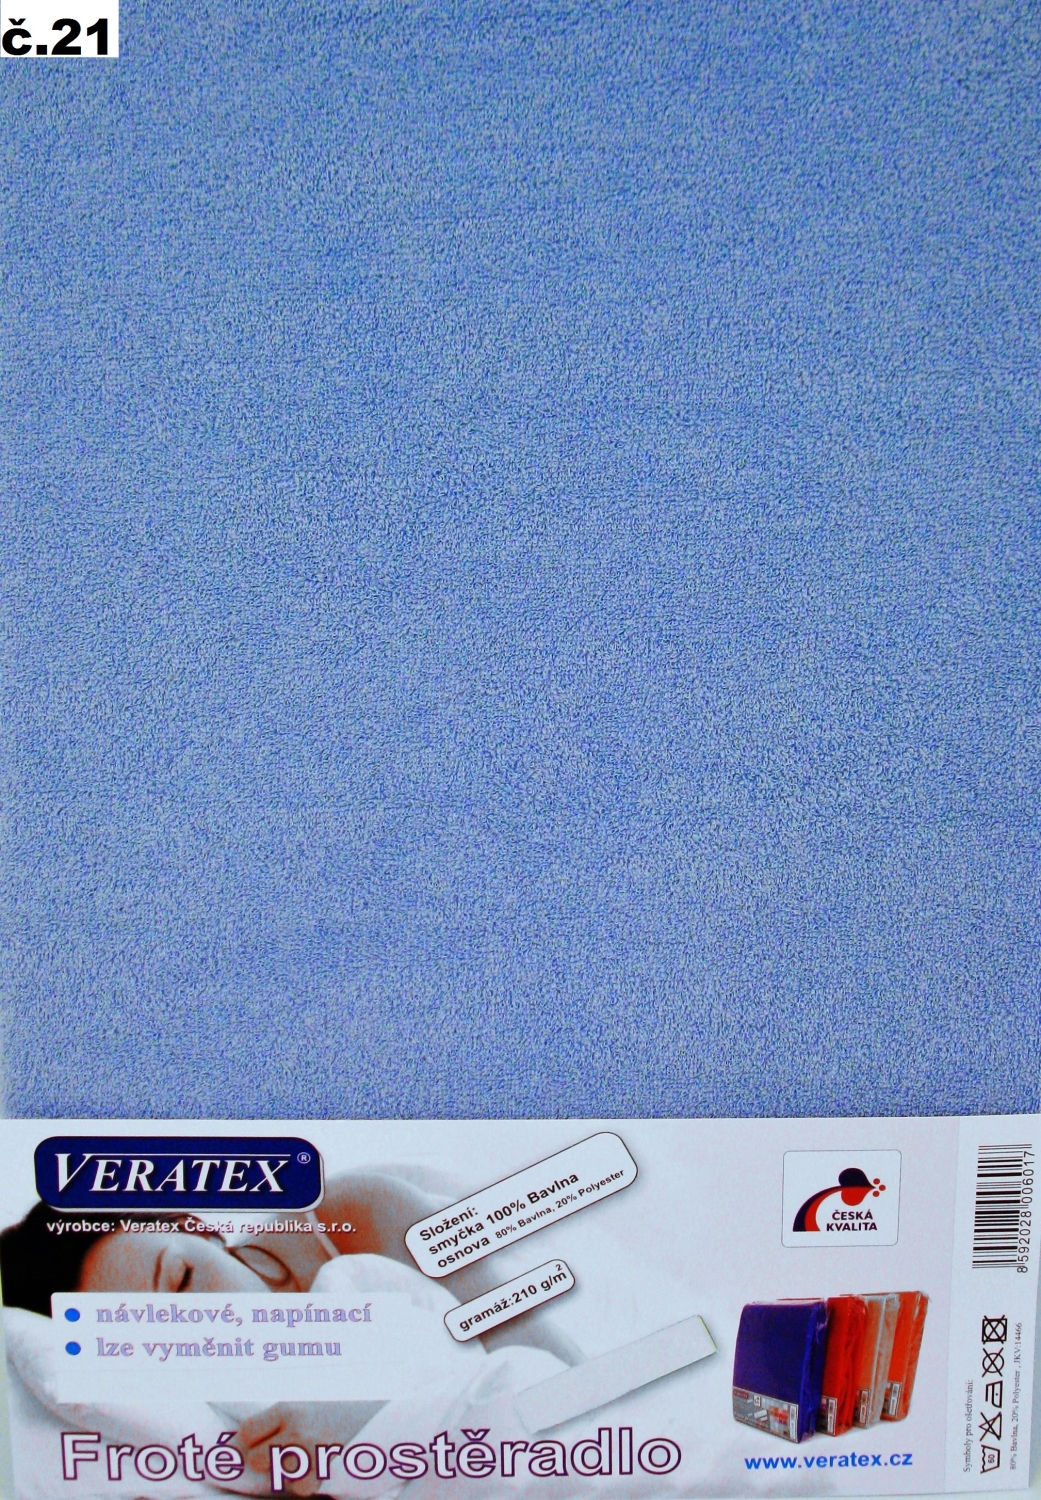 Veratex Froté prostěradlo 100x200/16 cm (č.21-sv.modrá) 100x200 cm